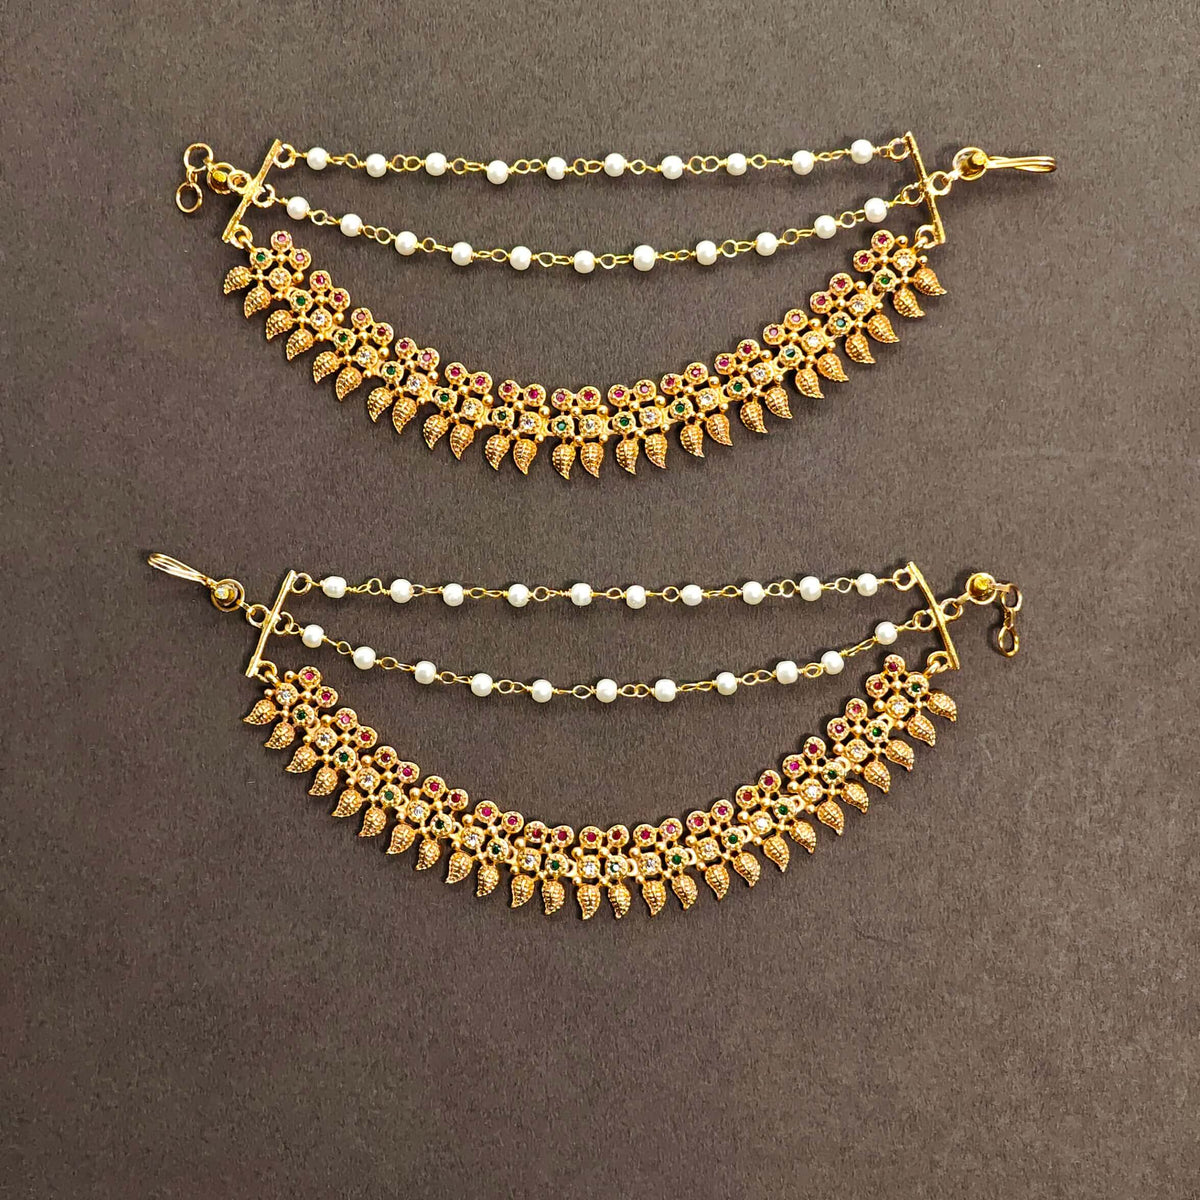 Perkha Antique Ear Chain